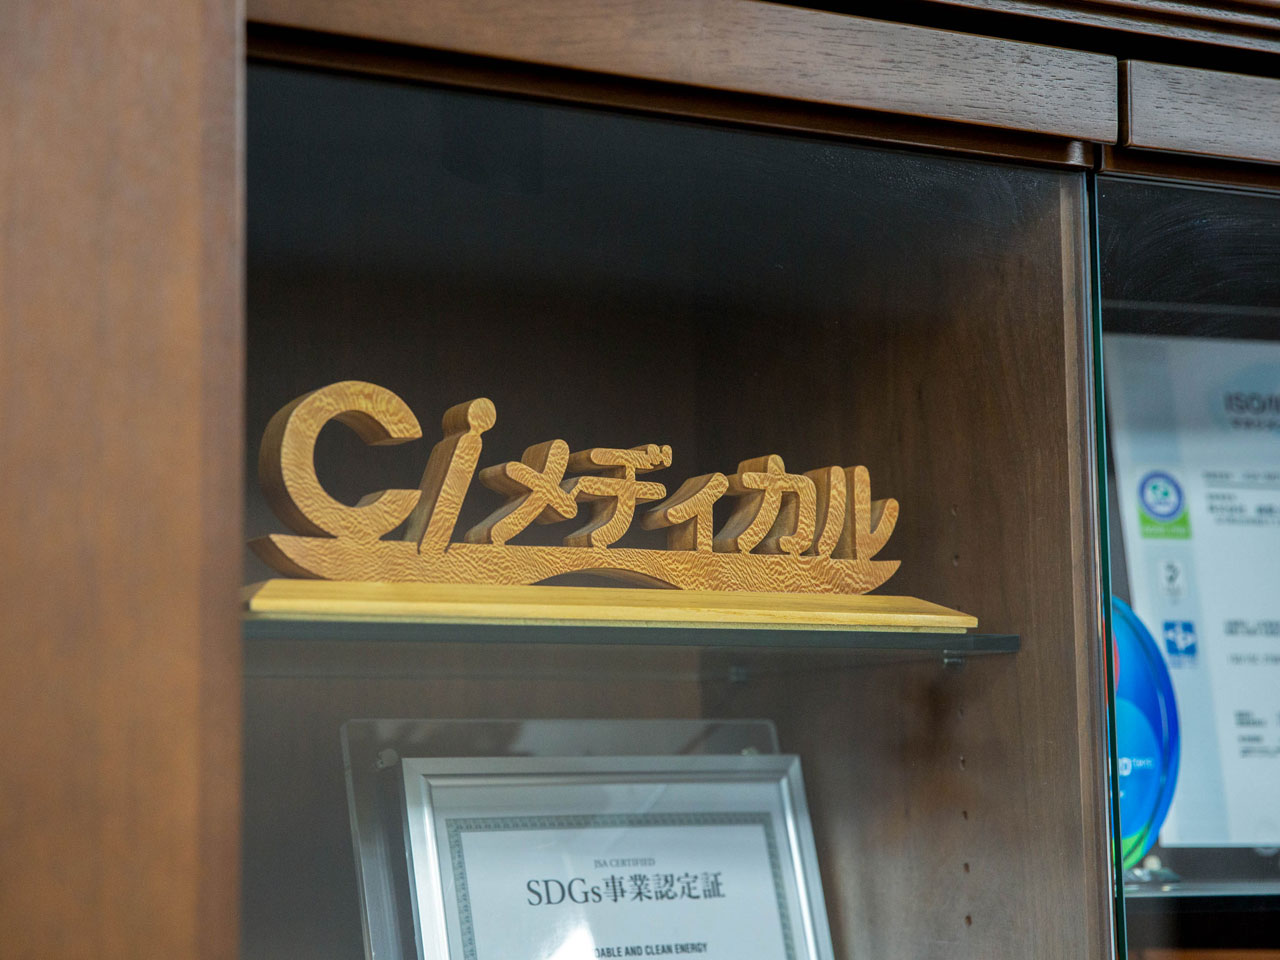 石川県白山市にある同社は、祖業にしてメイン事業である歯科クリニック向けのカタログ通販を筆頭に、様々な事業を多角的に展開している。